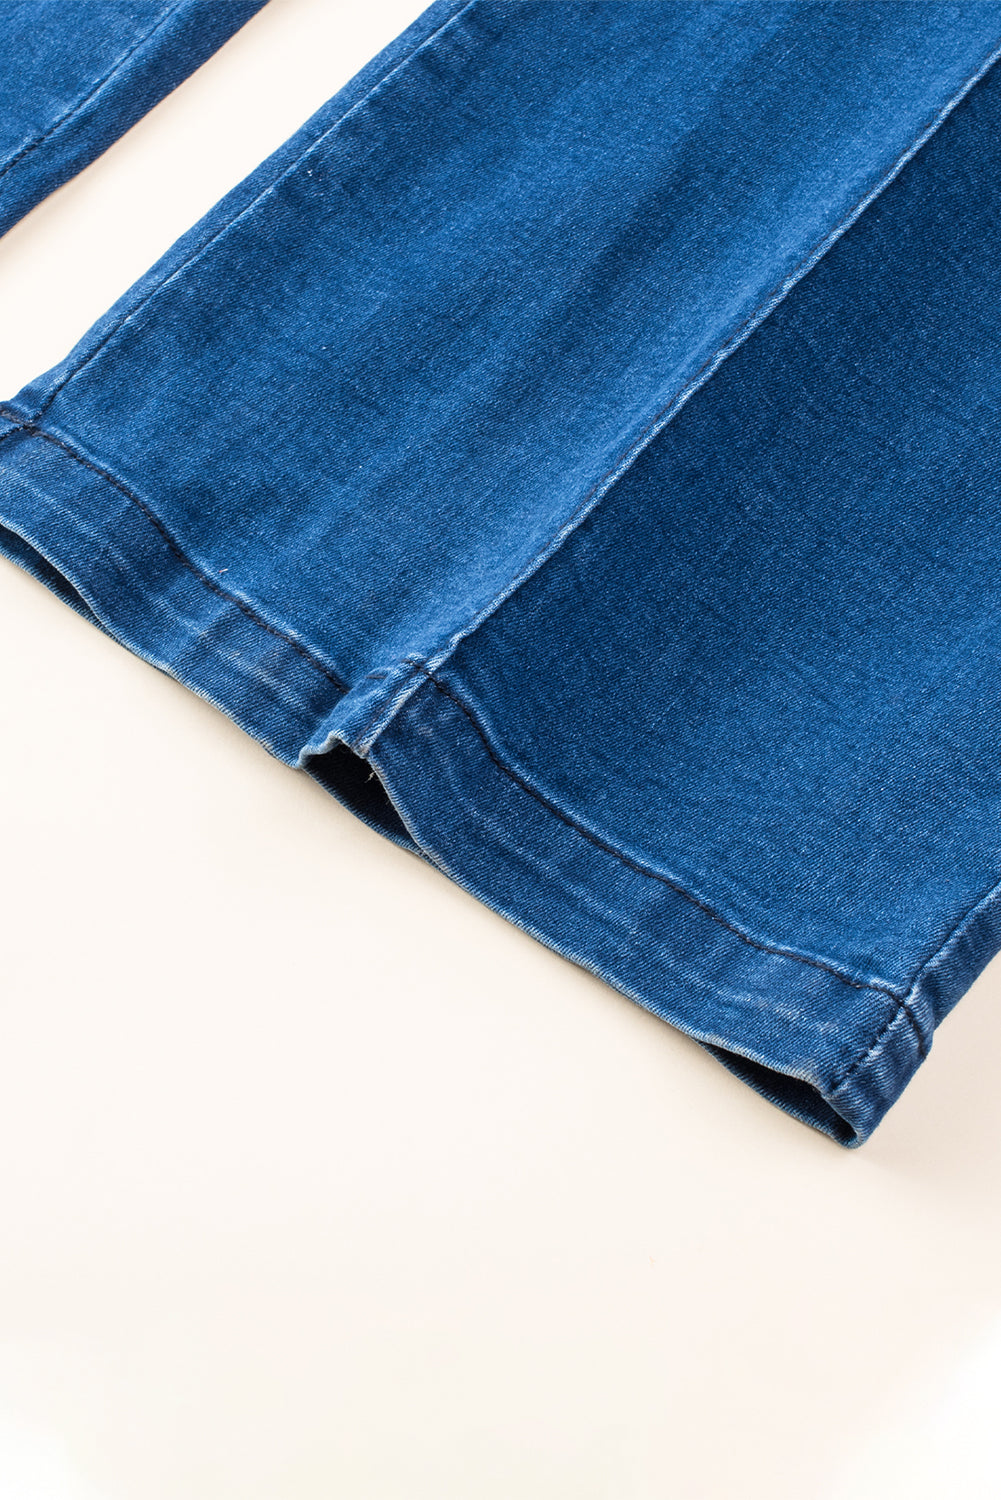 Combinaison en jean bleue à bretelles fines et encoche en V